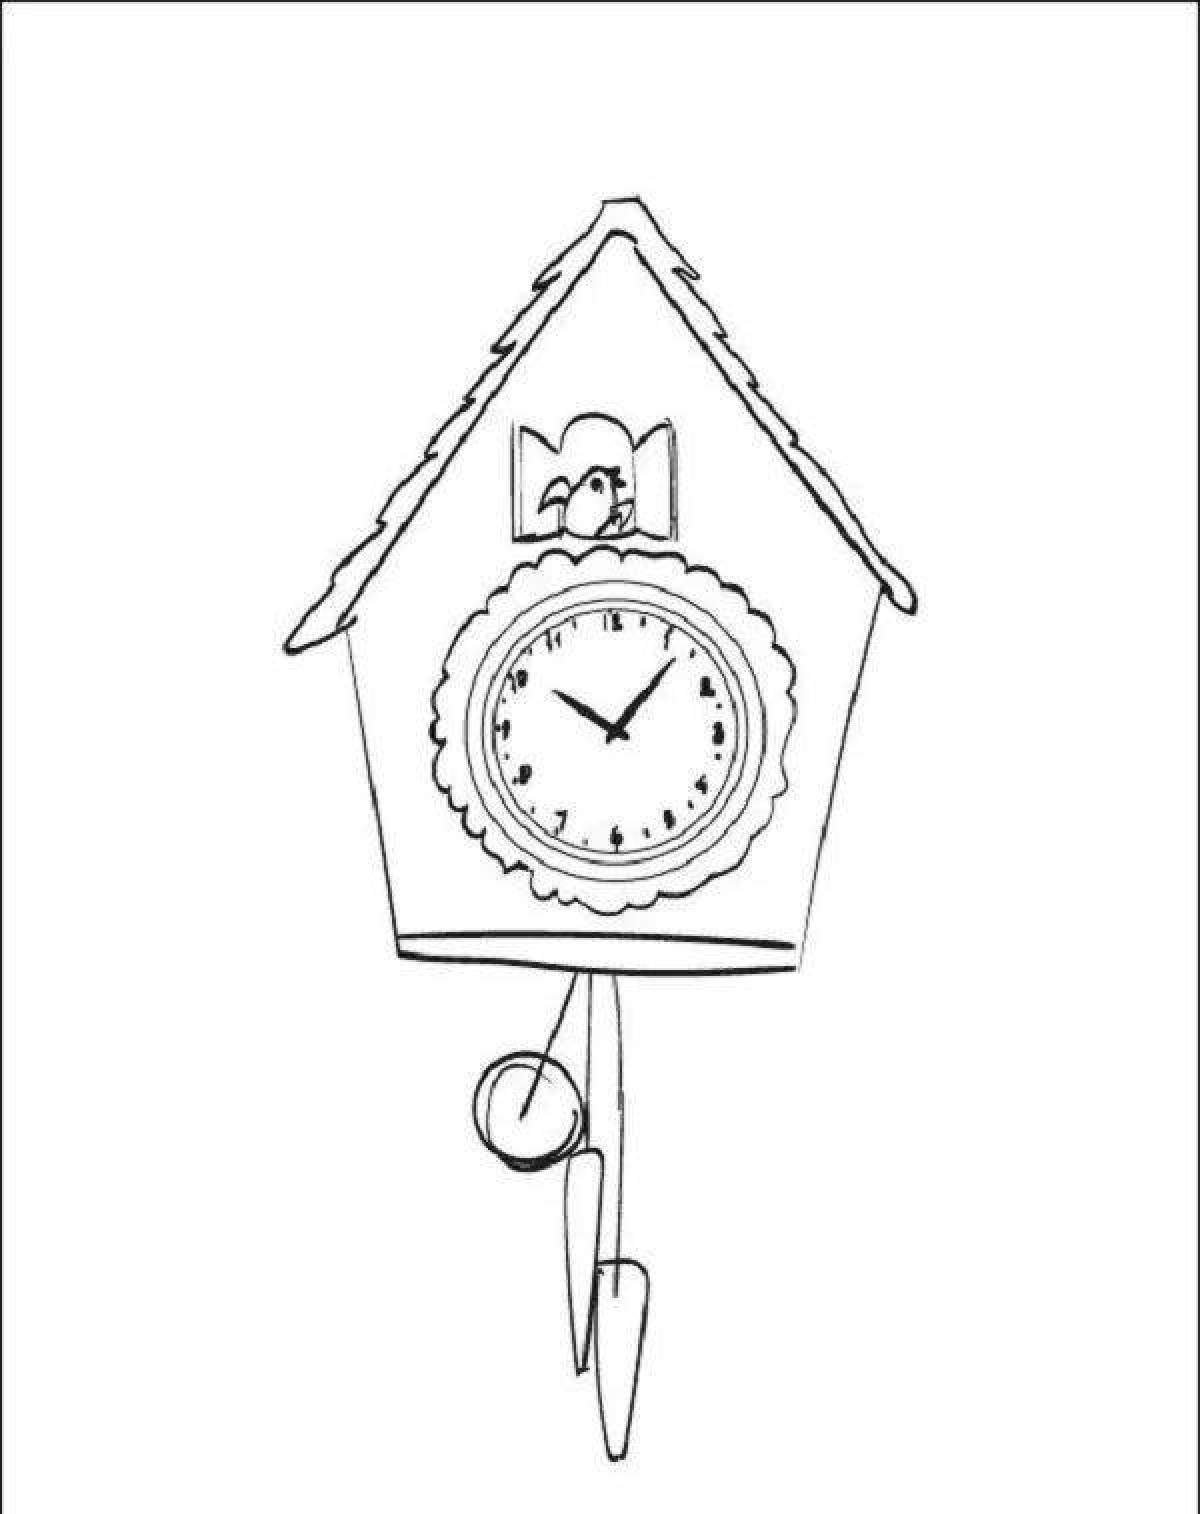 Cuckoo clock #2